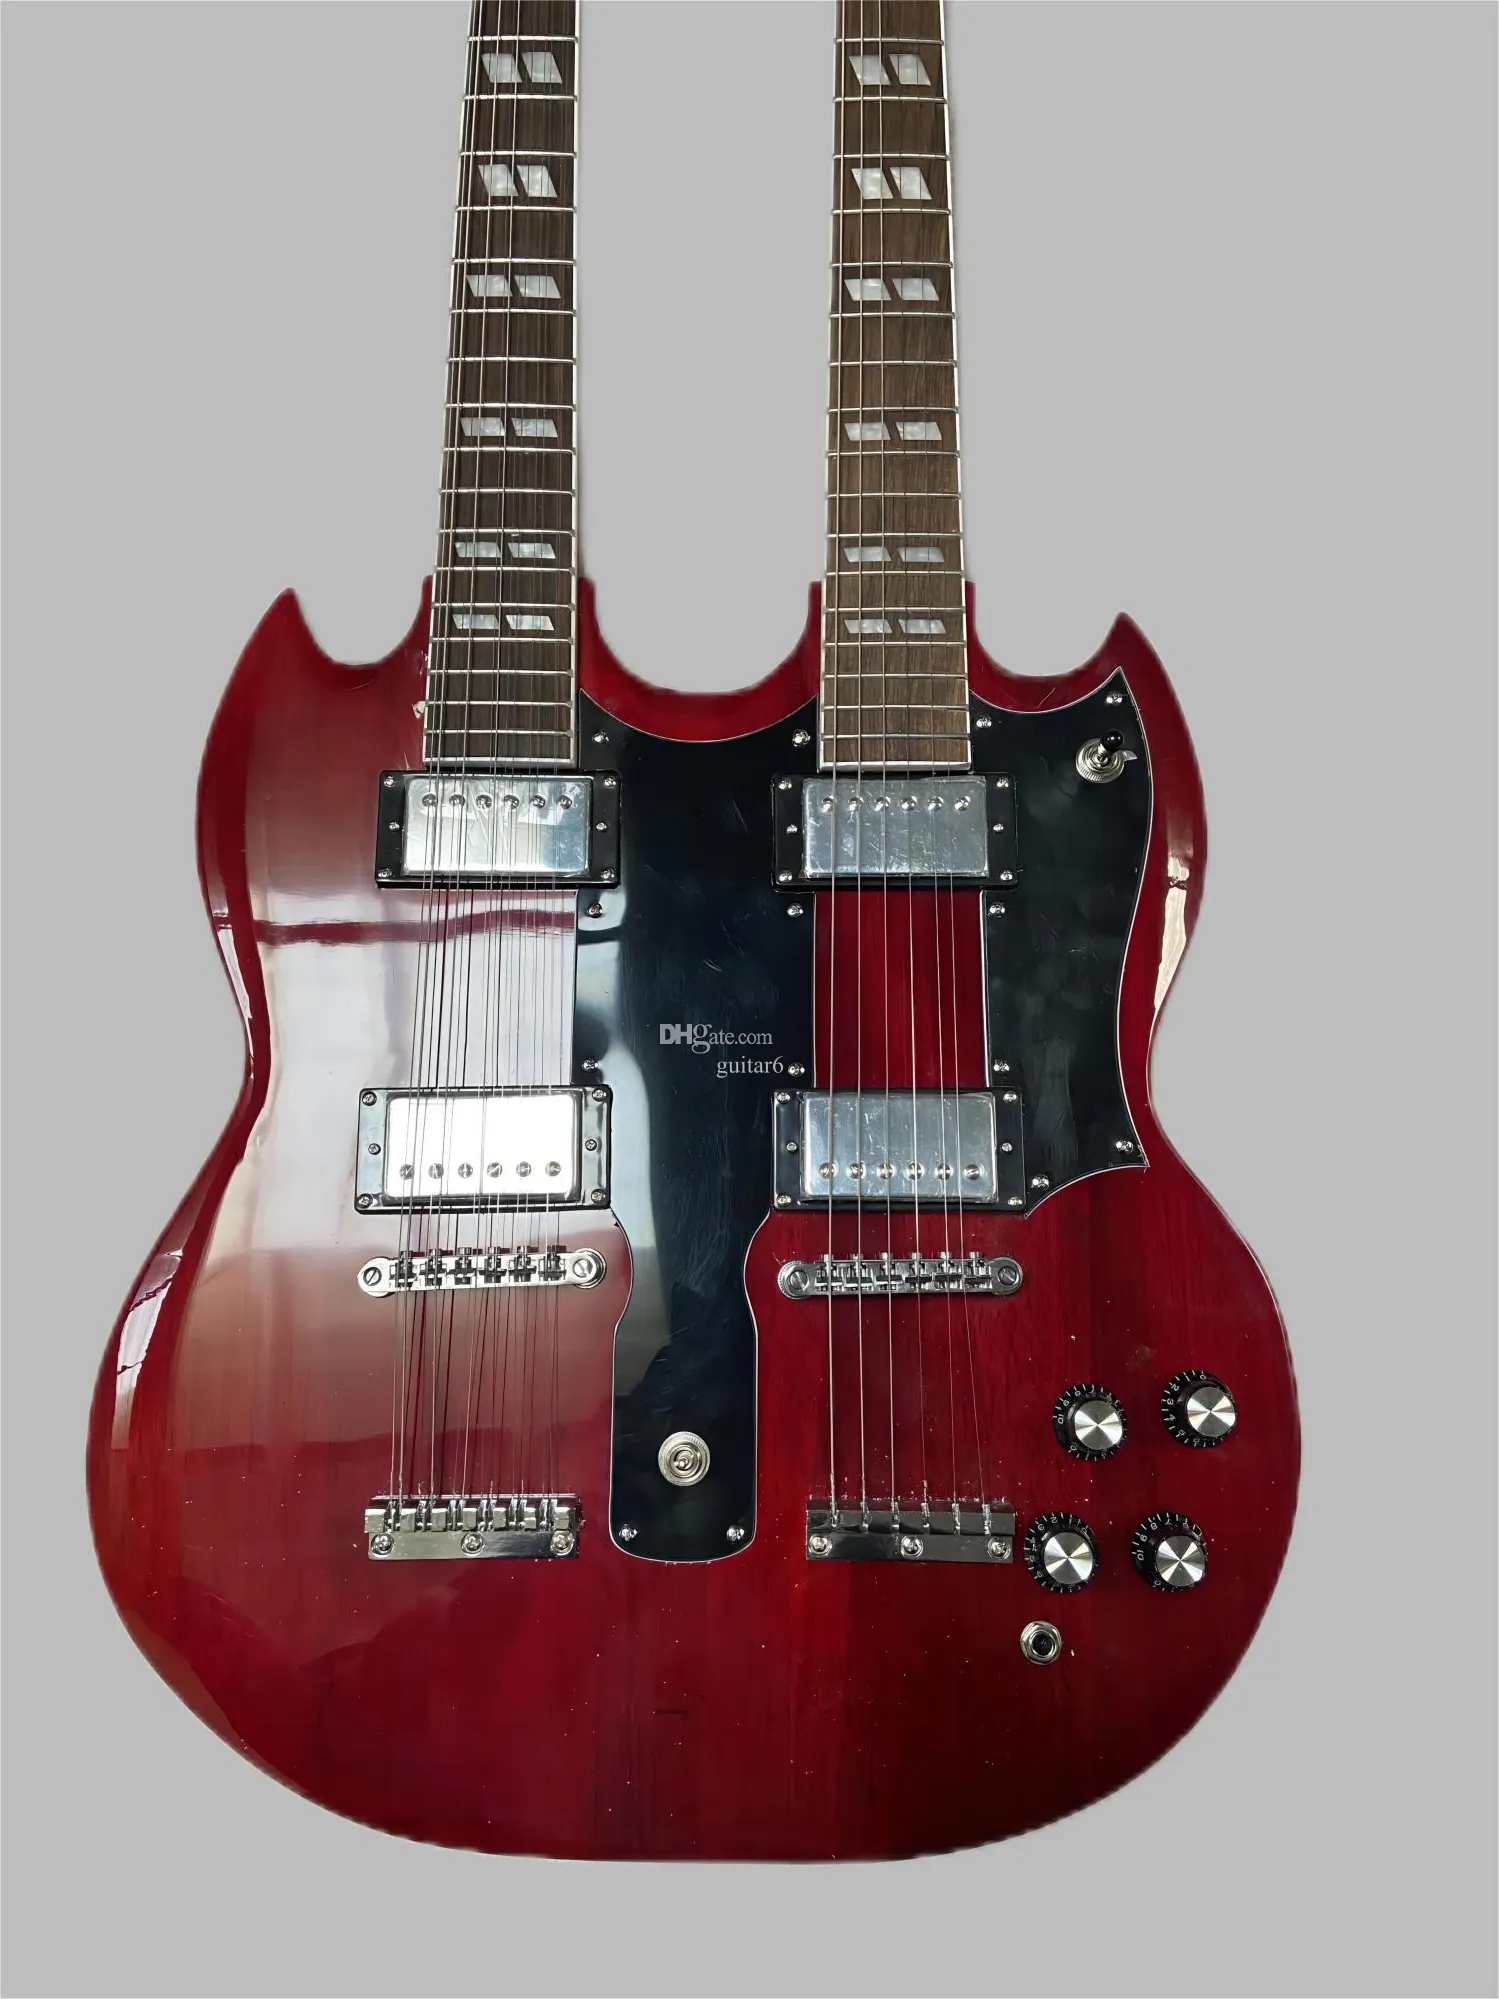 Dwułowe gitara elektryczna, 6-strunowa + 12-strunowa, mahoniowe przezroczyste czerwone nadwozie, kaset + nabój z podwójnym otwarciem, płaski